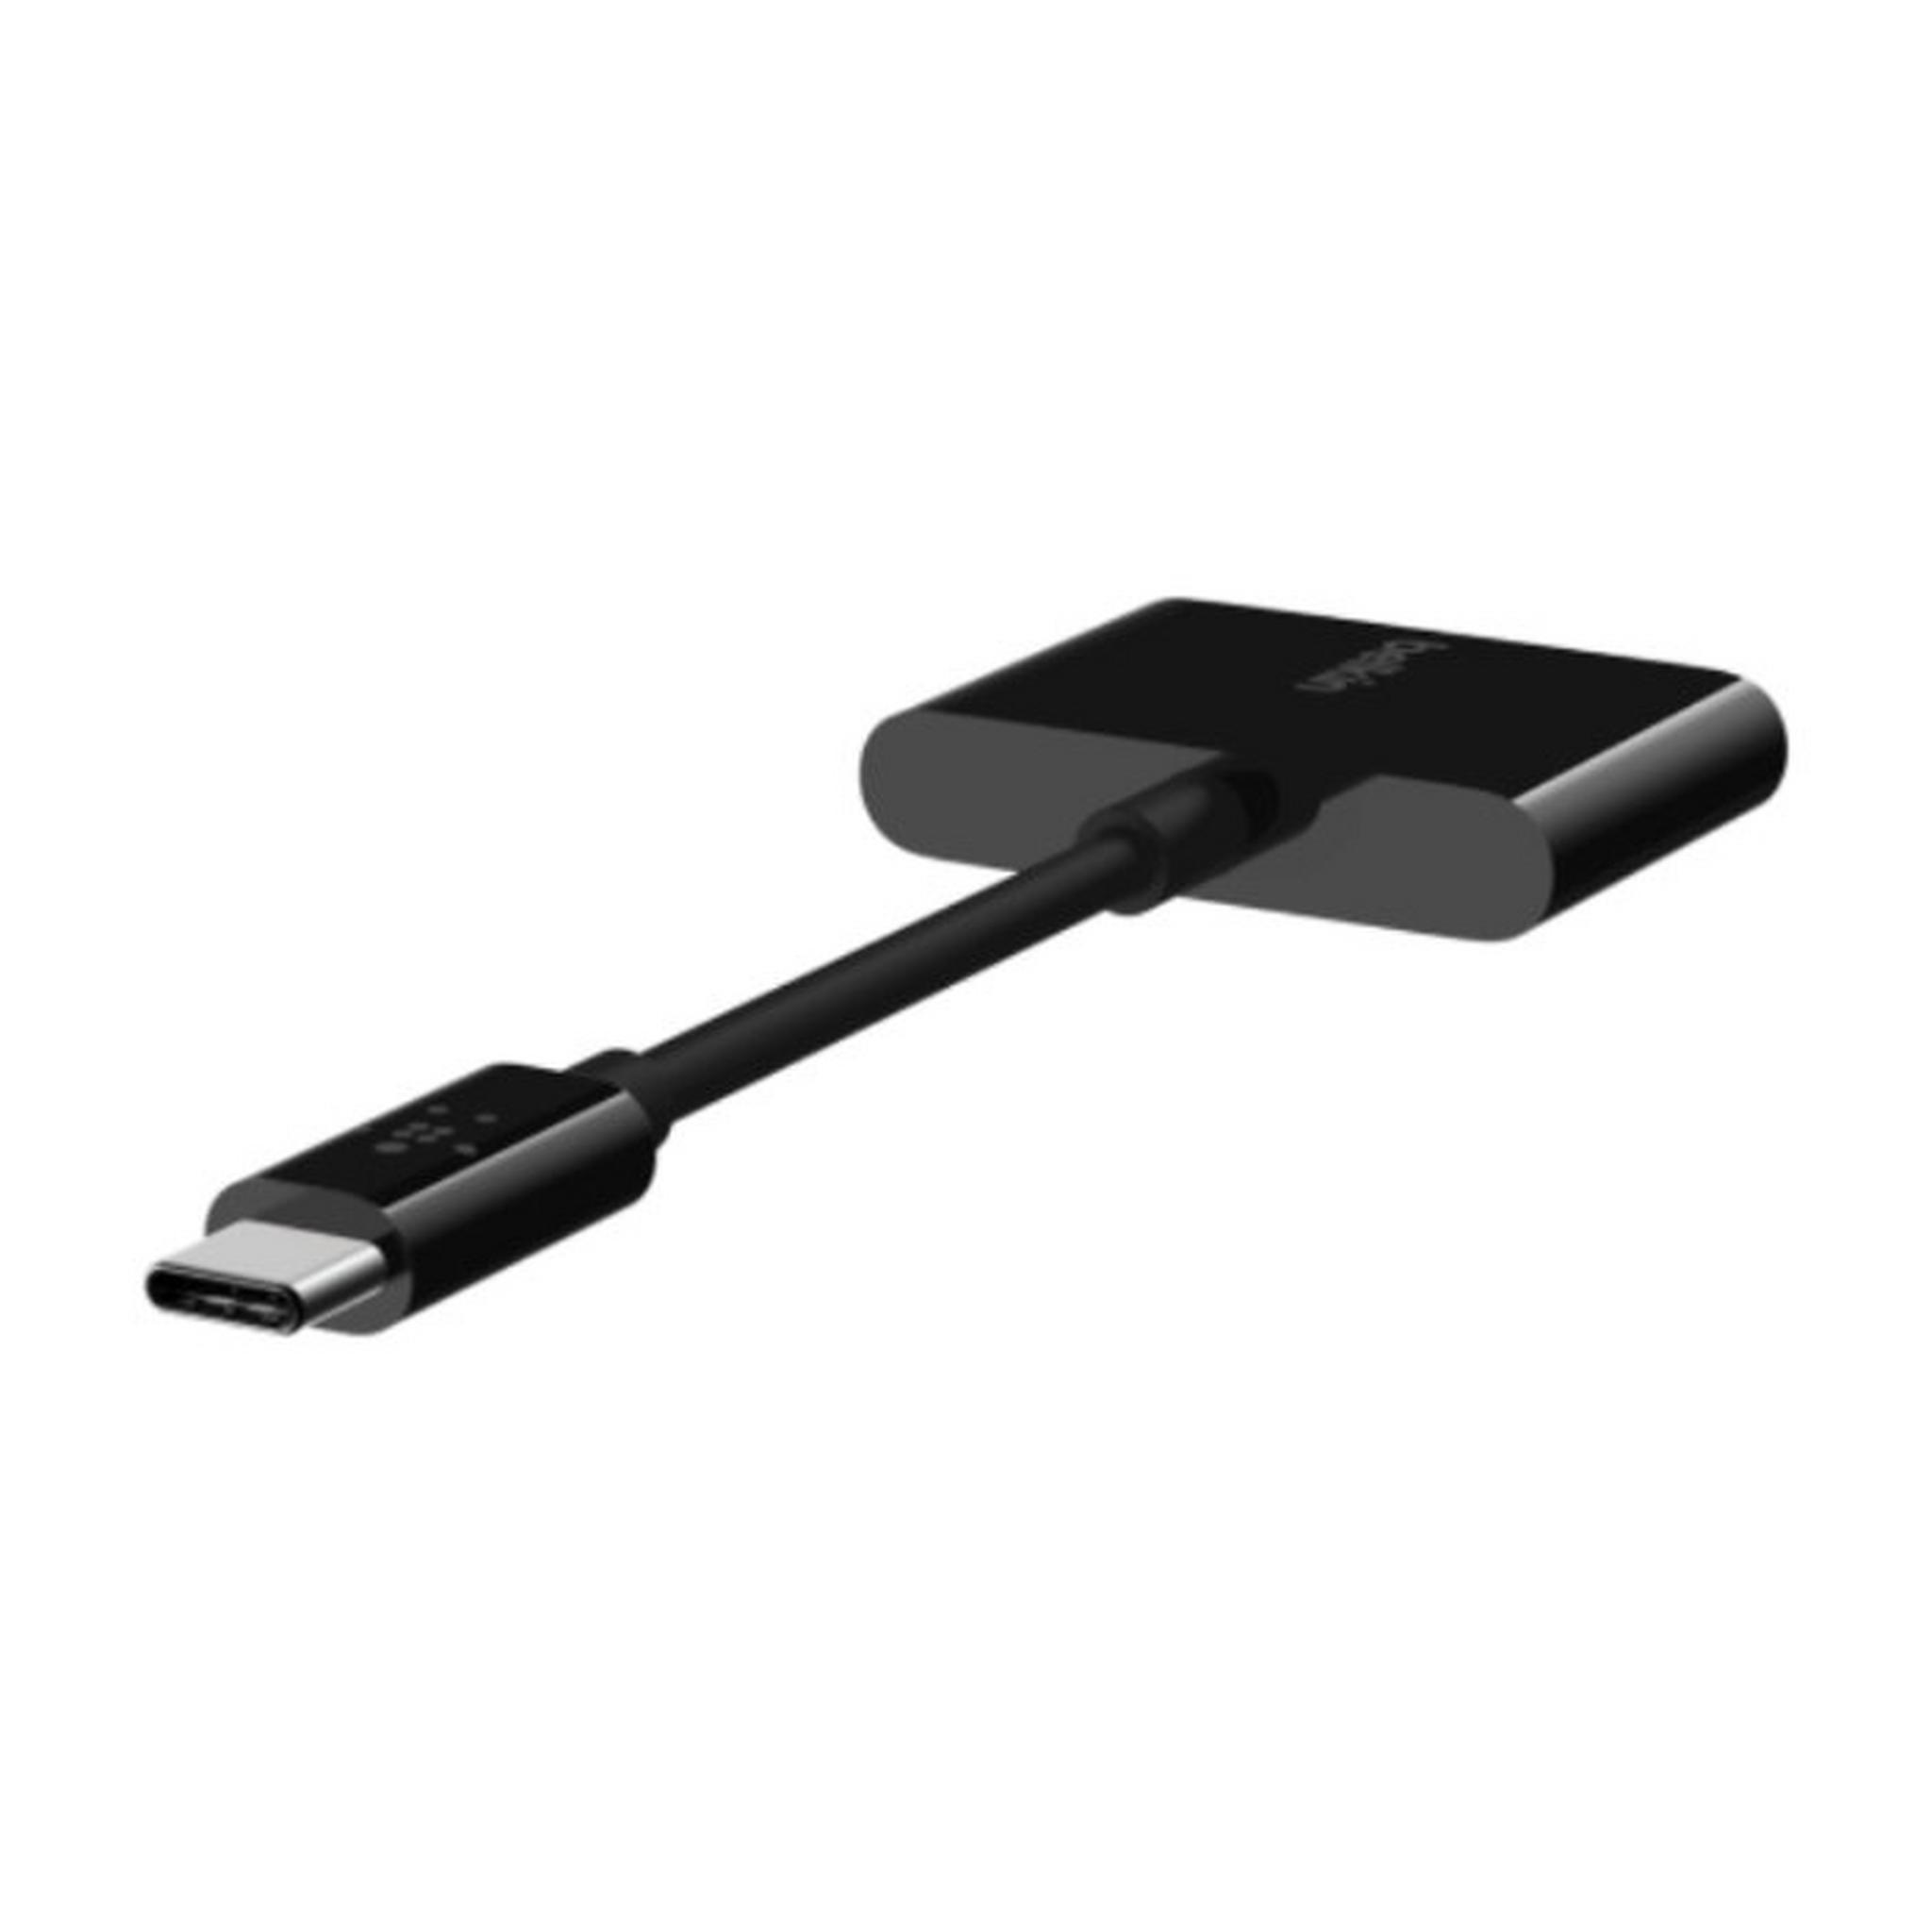 Belkin RockStar 3.5mm Audio USB-C Adapter Charger - Black (F7U080btBLK)